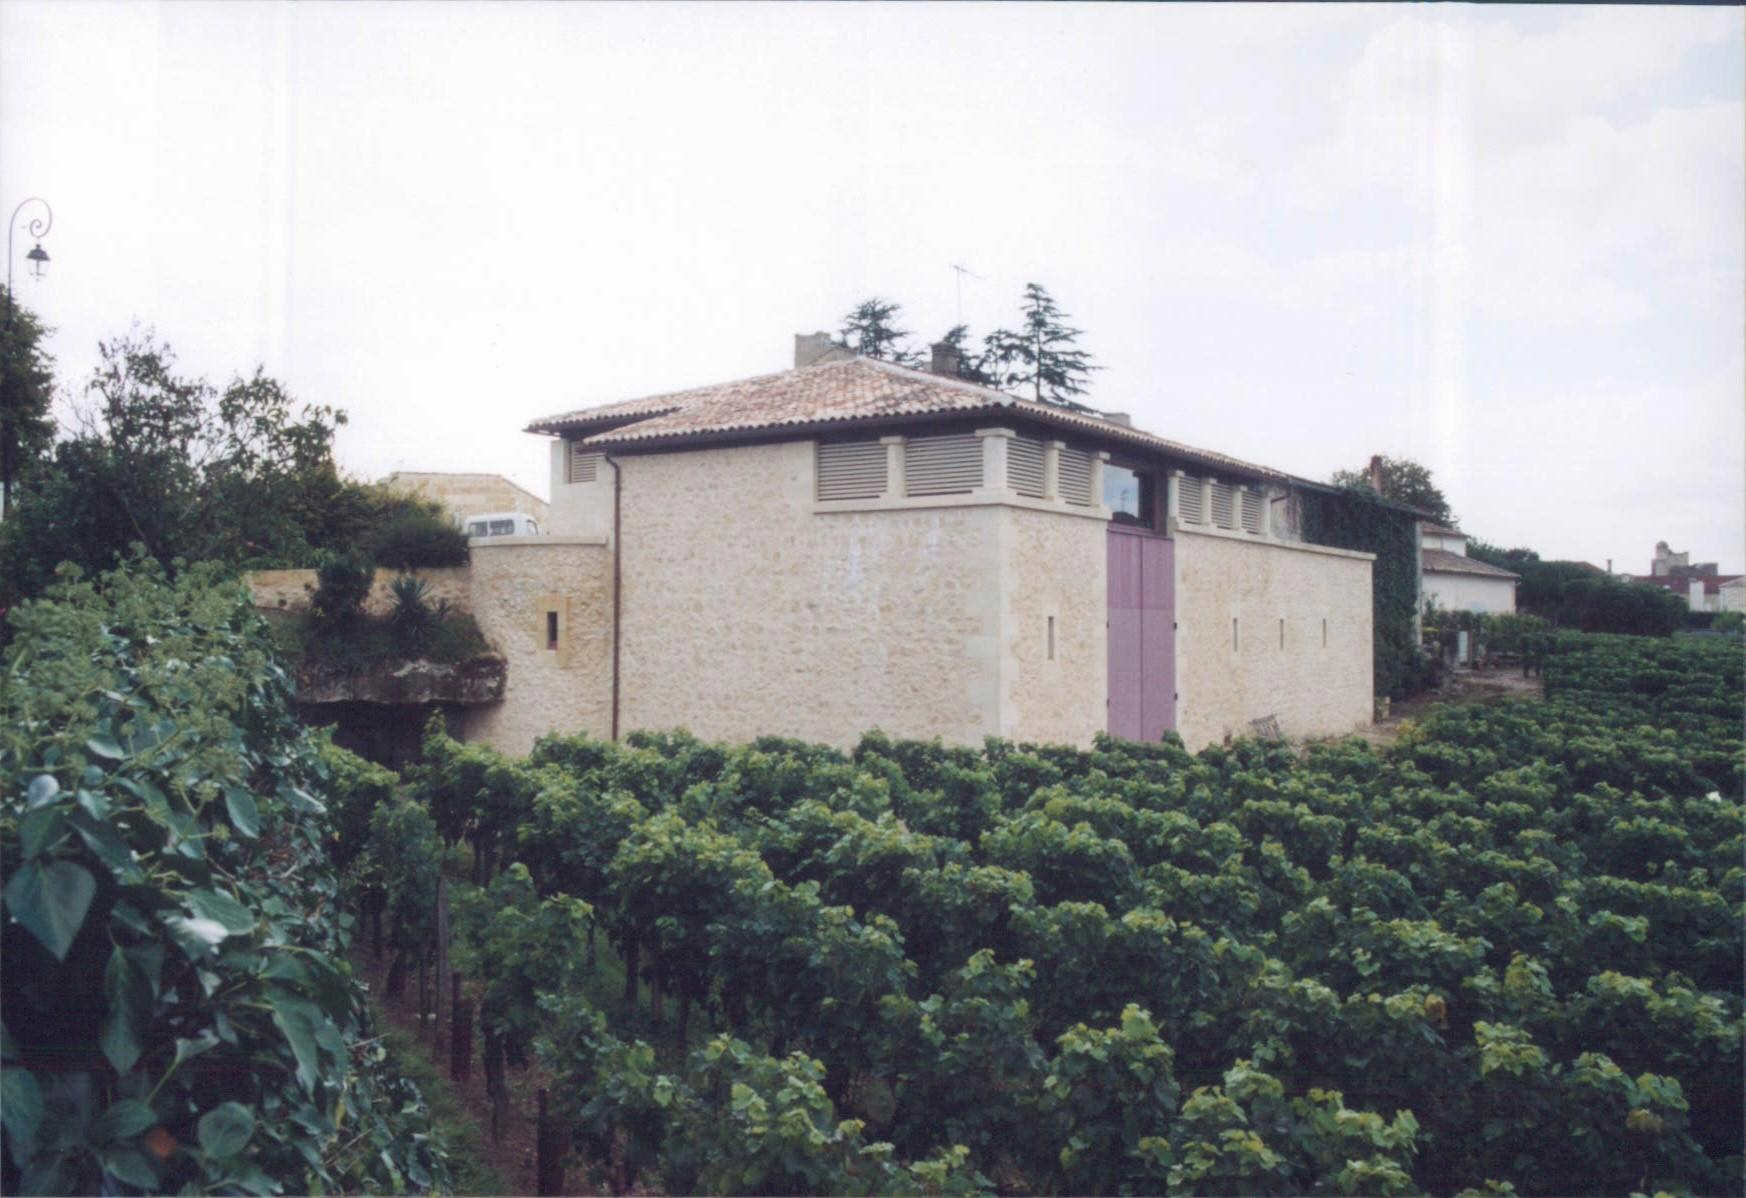 Château Caillou Les Martins（石头马丁酒庄） AOC 吕萨克－圣埃米利永（Lussac Saint-Emilion） 红葡萄酒 2011